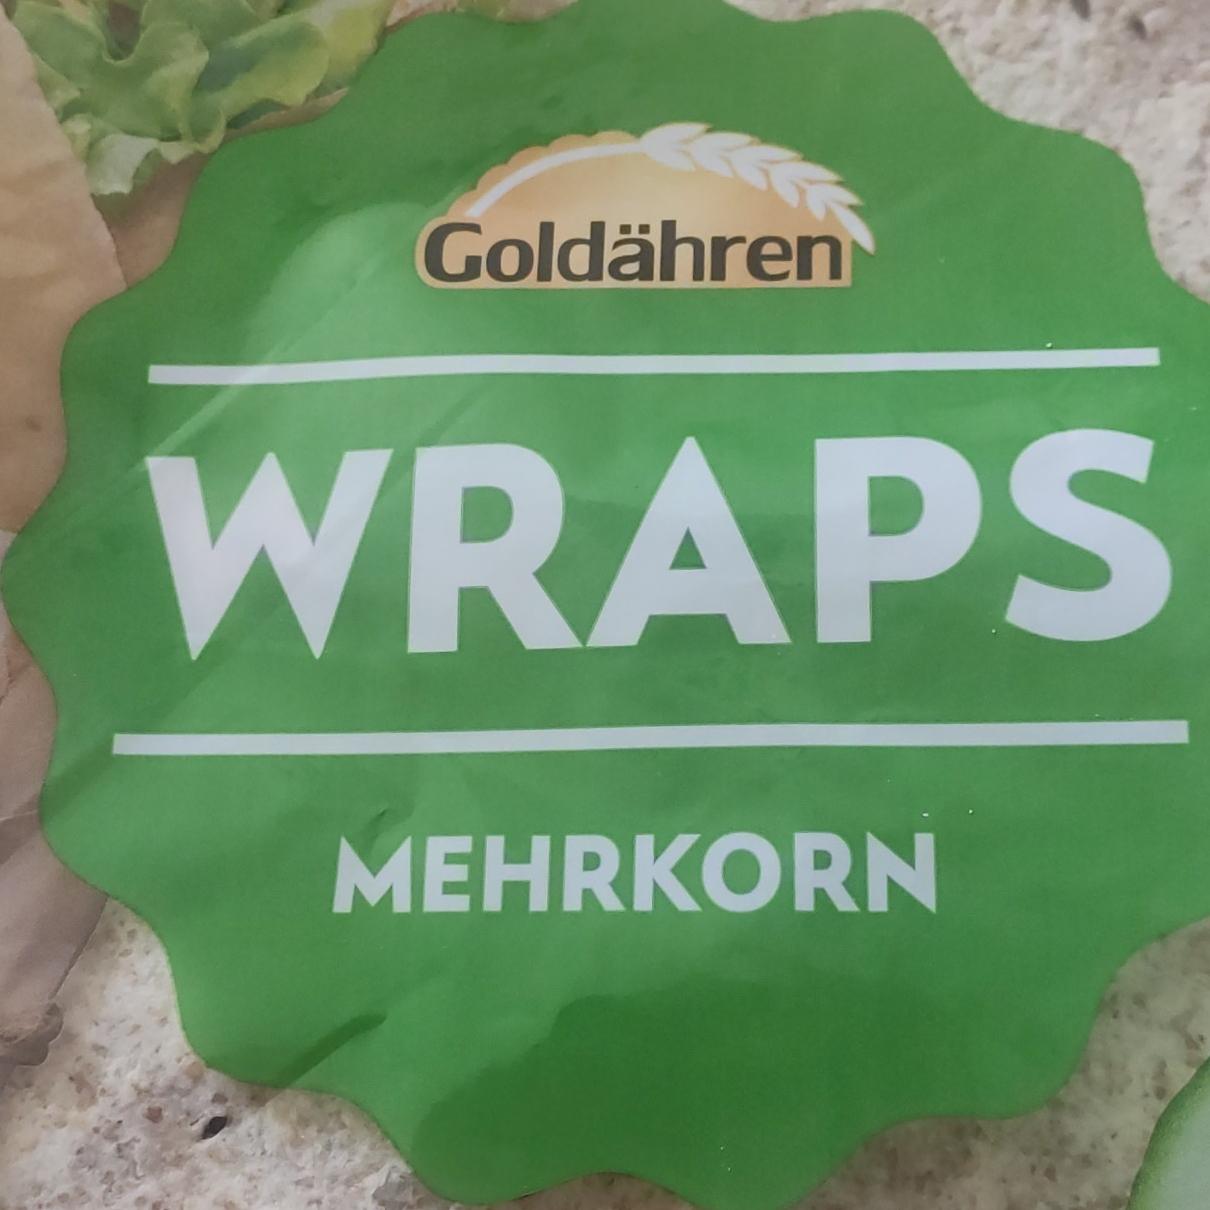 Képek - Wraps mehrkorn Goldähren